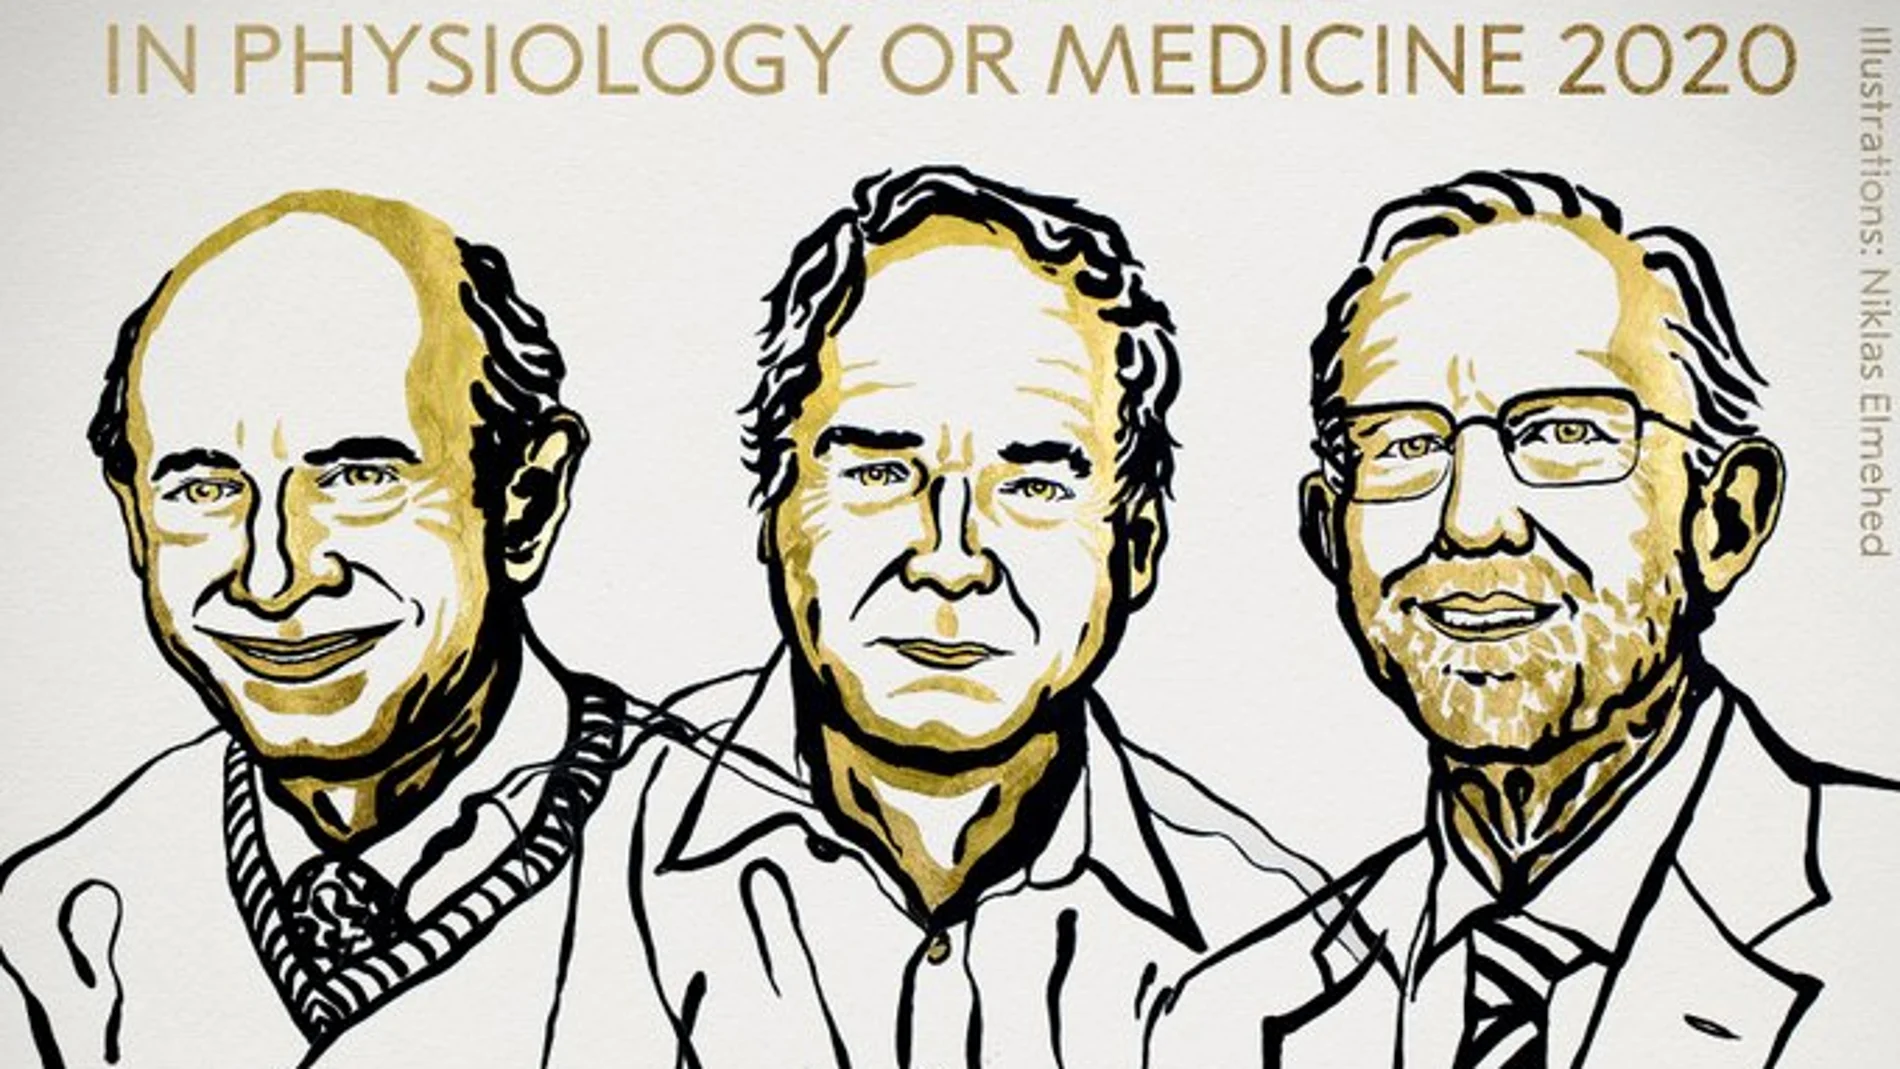 Harvey J. Alter, Michael Houghton y Charles M. Rice, ganadores del premio Nobel de Medicina 2020